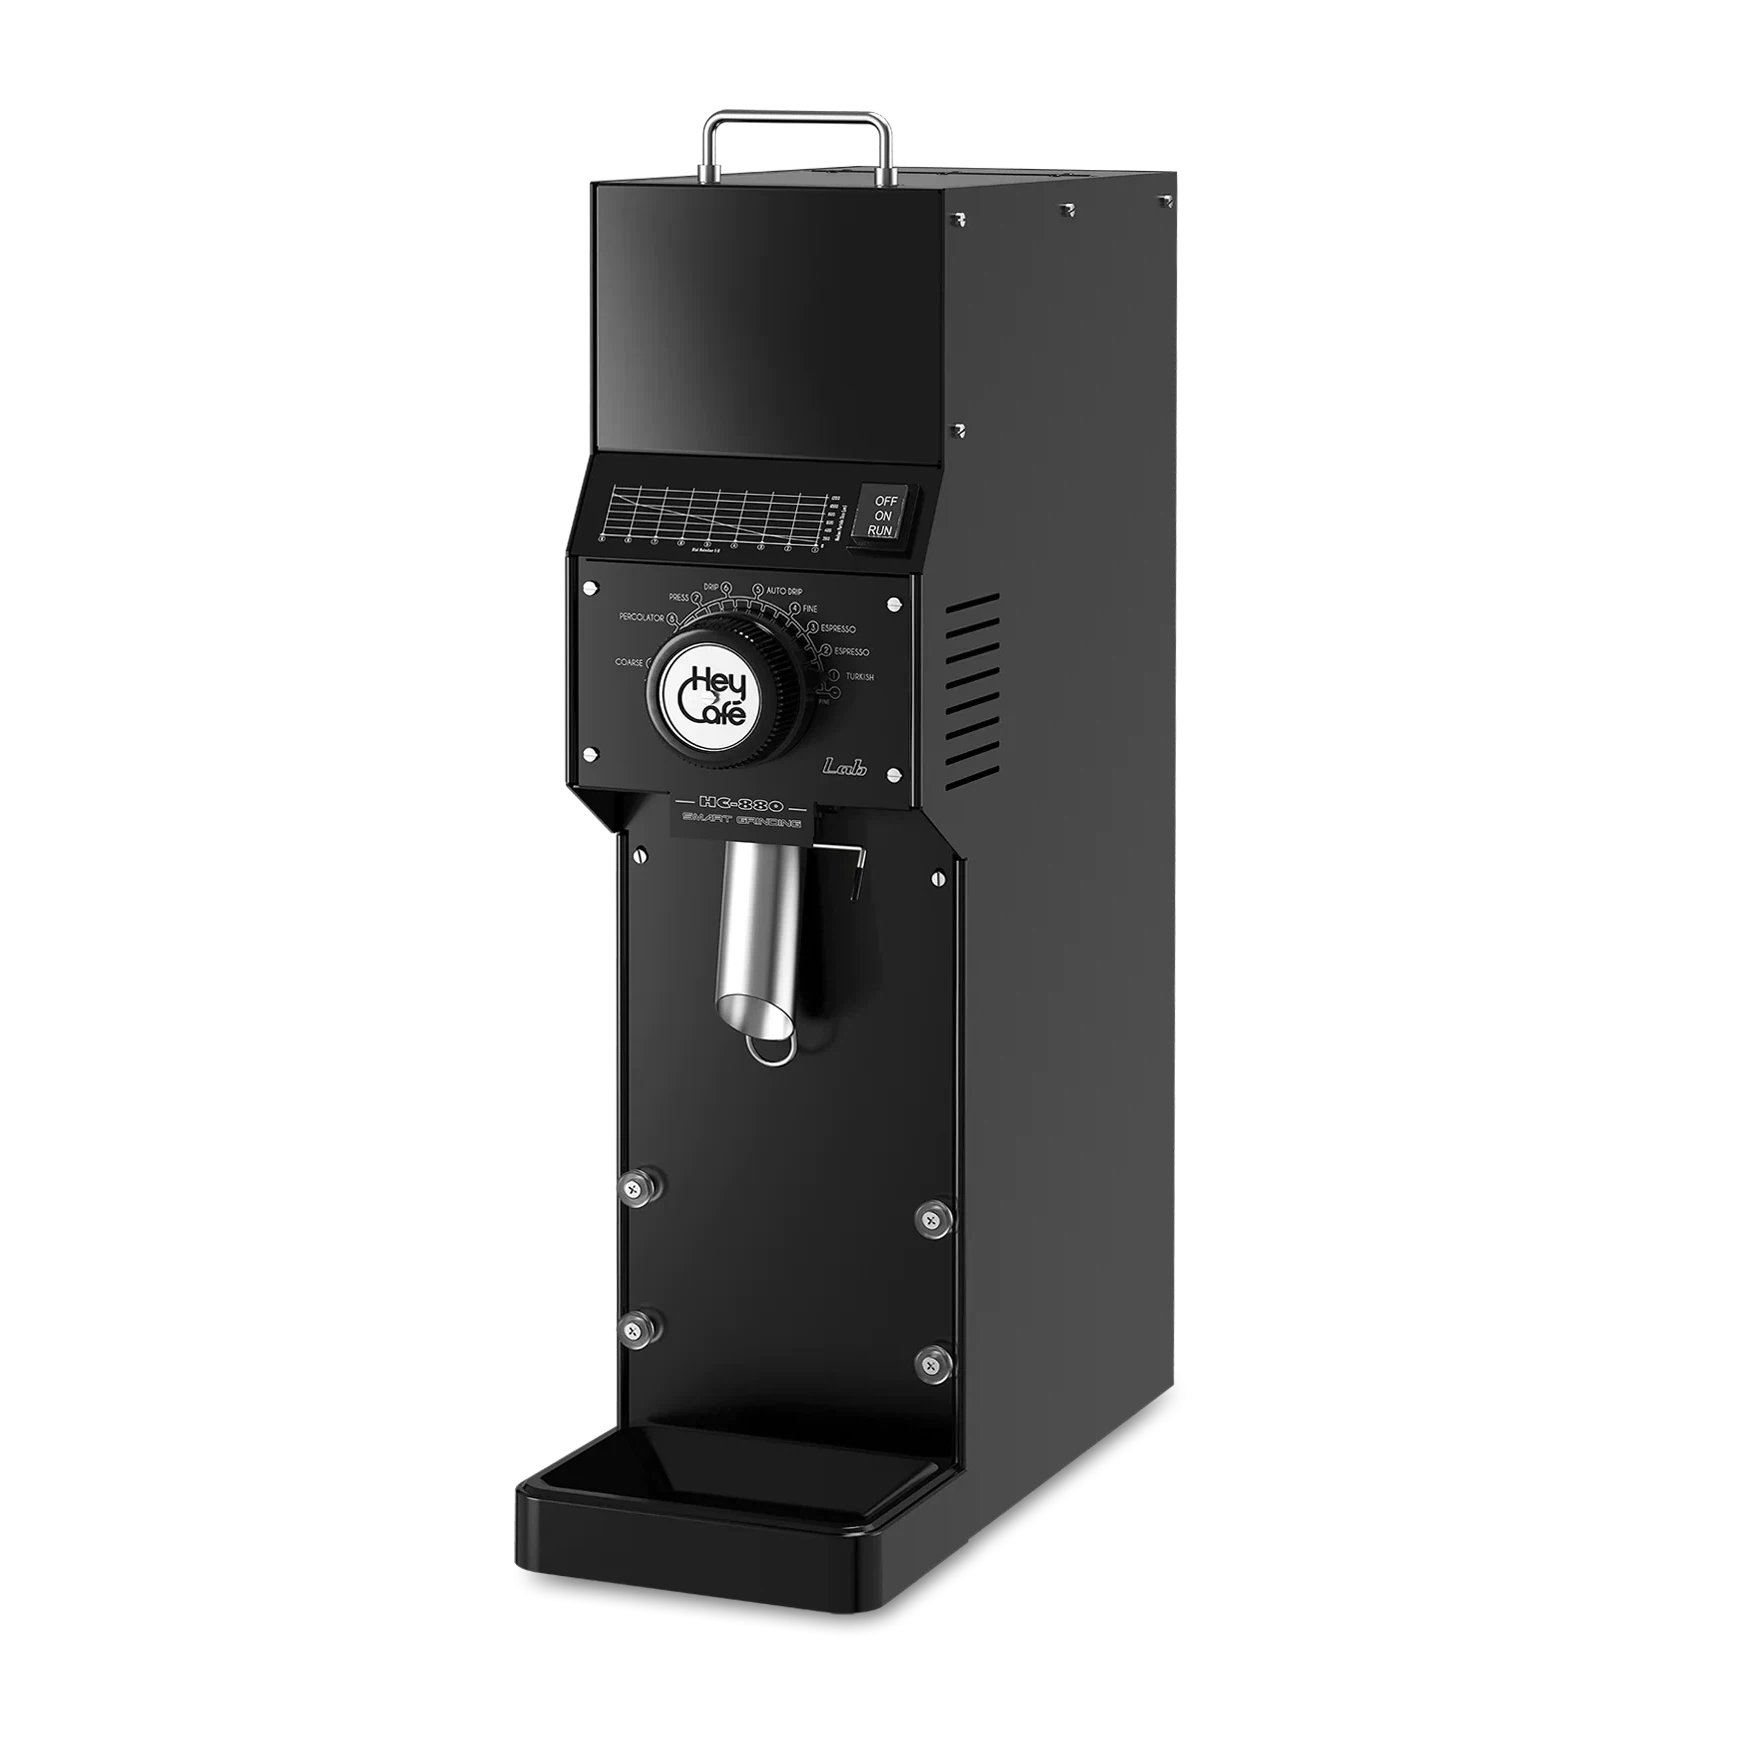 HeyCafe HC-880 LAB Shop Coffee Grinder